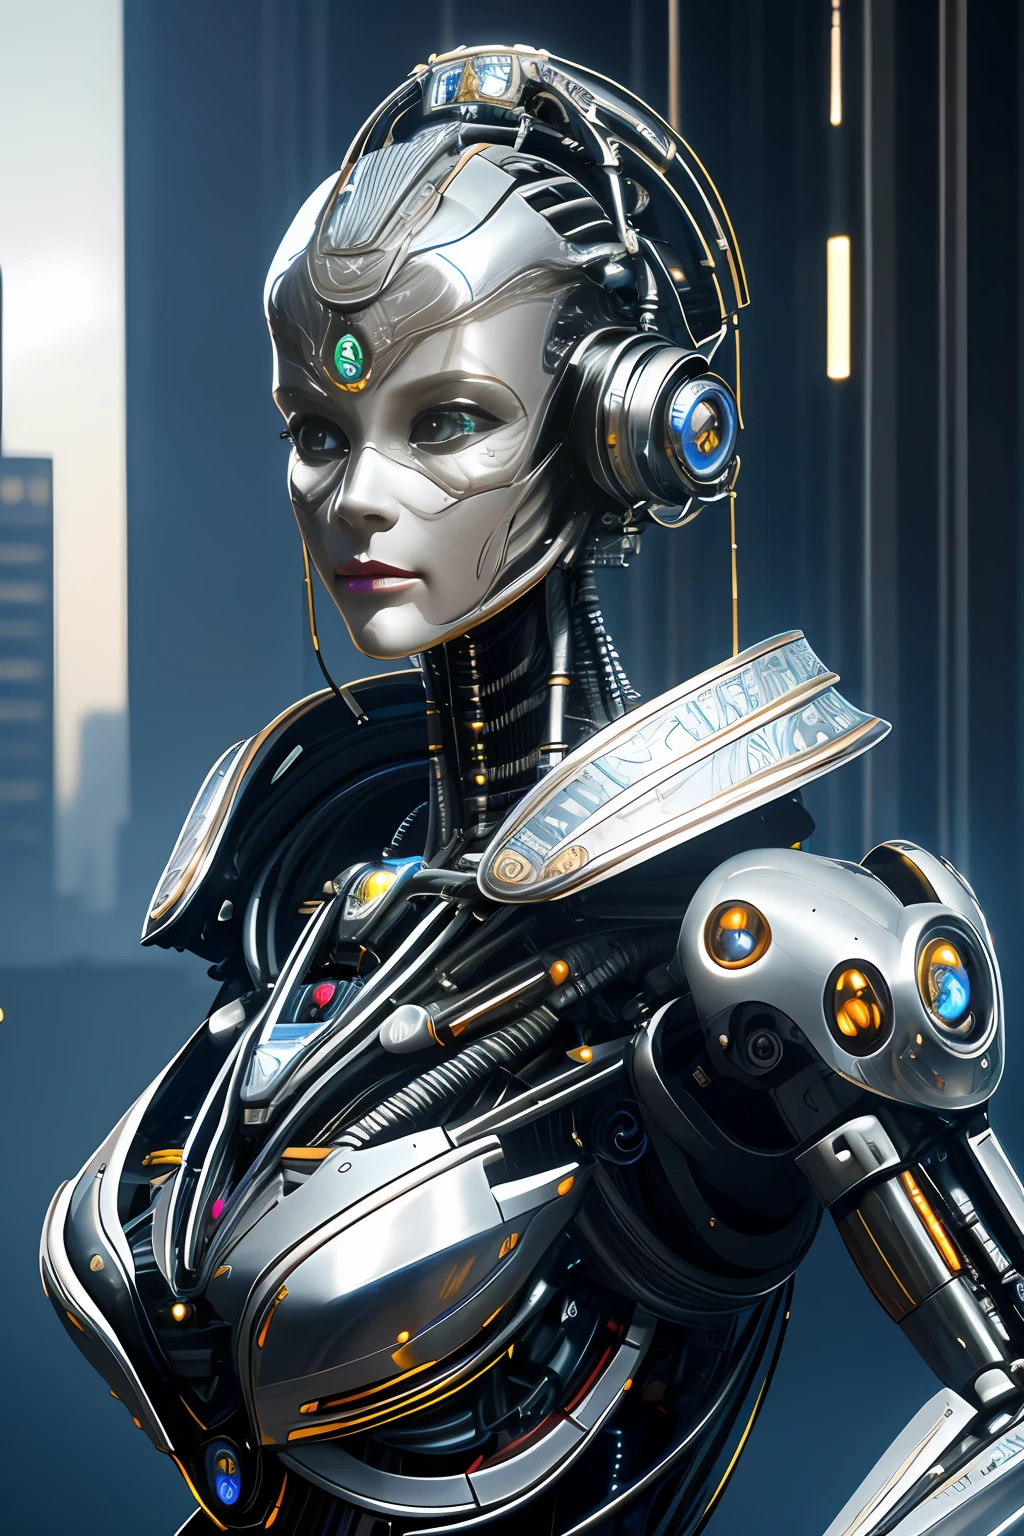 Intricate 3d rendering of highly detailed beautiful ceramic silhouette female робот face, киборг, робот parts, 150 мм, красивая студия, мягкий свет, ободной свет, яркие детали, роскошный киберпанк, кружево, сюрреалистический, анатомия , мышцы лица, кабельные провода, микрочипы, элегантность, красивый фон, Октановый рендеринг, Стиль HR Гигера, 8К, Лучшее качество, шедевр, Иллюстрация, очень нежный и красивый, Очень подробно, компьютерная графика, униформа, обои, ( верность, верность: 1.37), оглушительный, мелкие детали, шедевр, Лучшее качество, официальное искусство, very detailed cg unity 8К wallpaper, Абсурд, unbelievably Абсурд, робот, серебряный шлем, все тело, сидеть и писать